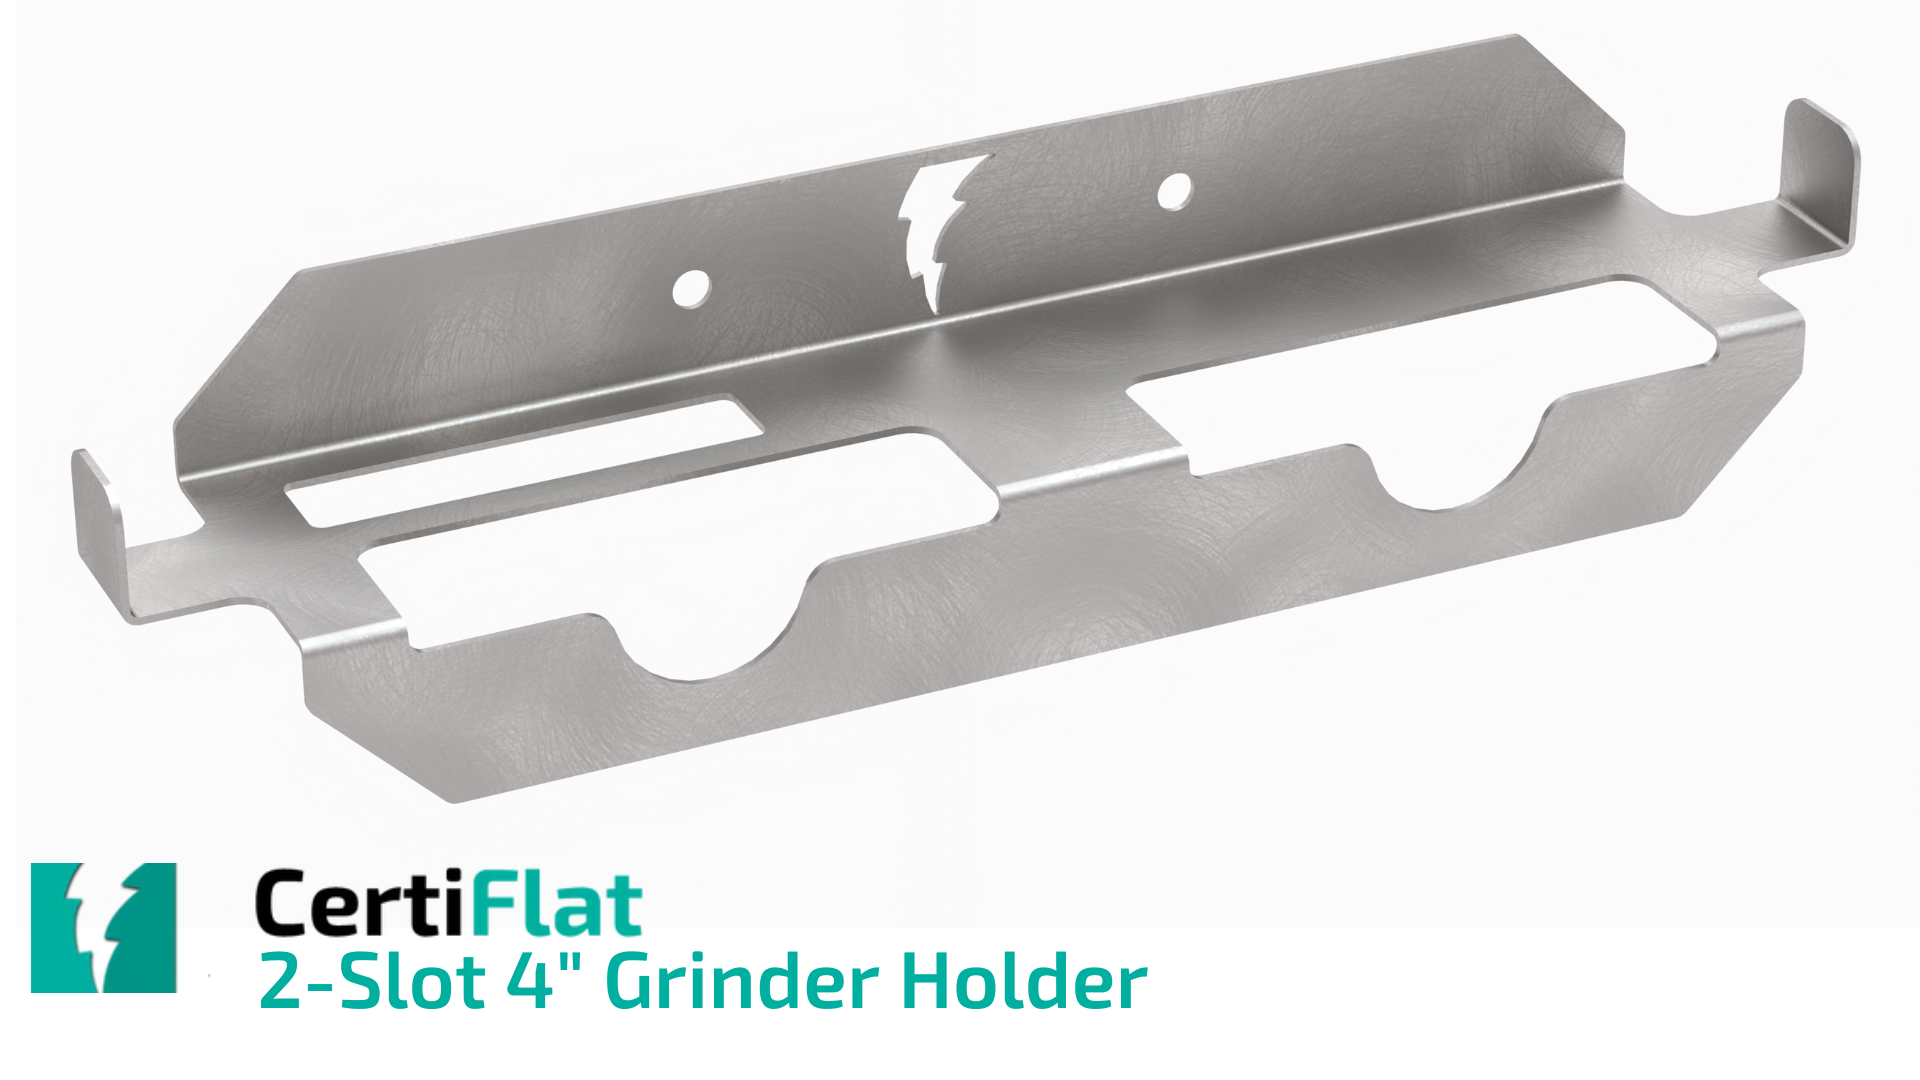 CertiFlat 2-Slot 4" Grinder Holder from WeldTables.com 